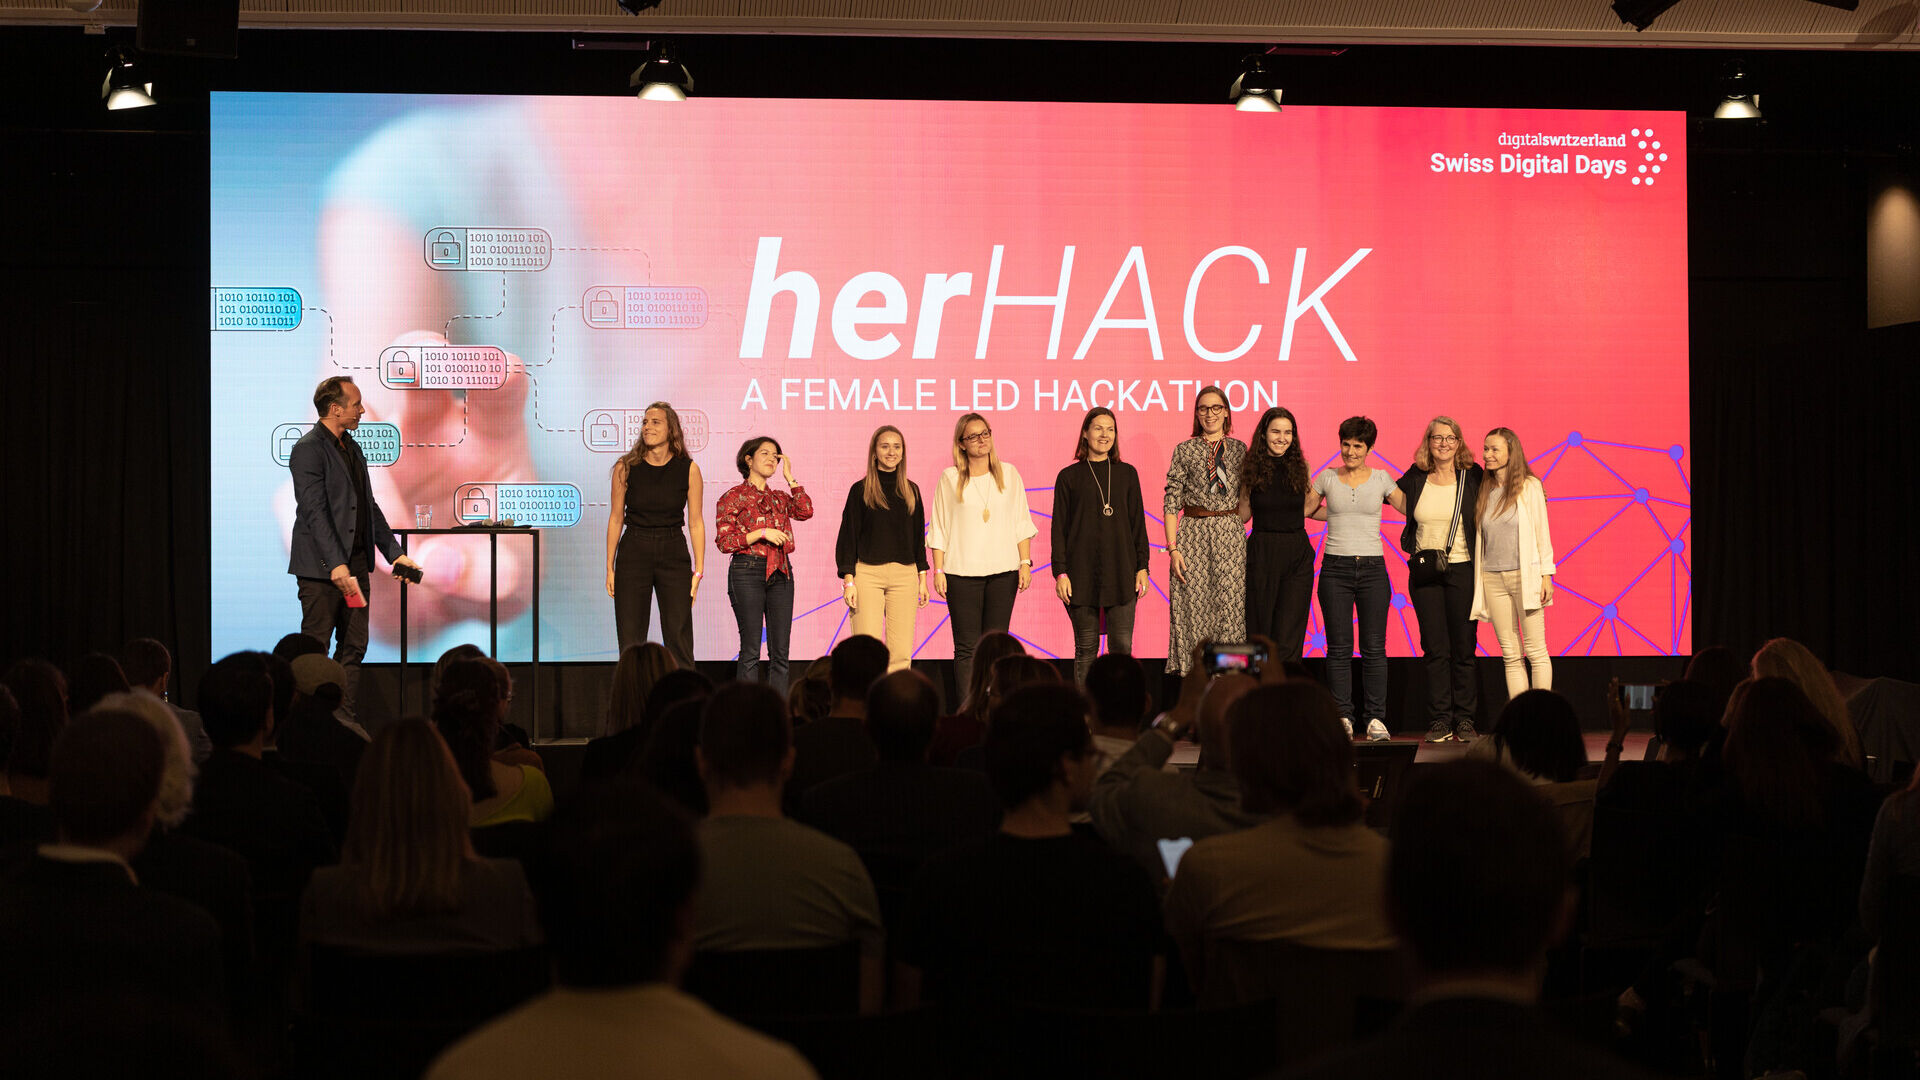 Swiss Digital Days: evenimentul final al „Swiss Digital Days” 2022 la Freiruum din Zug (Zug) pe 27 octombrie: ceremonia de premiere a hackatonului feminin „herHACK” cu victoria lui Greender